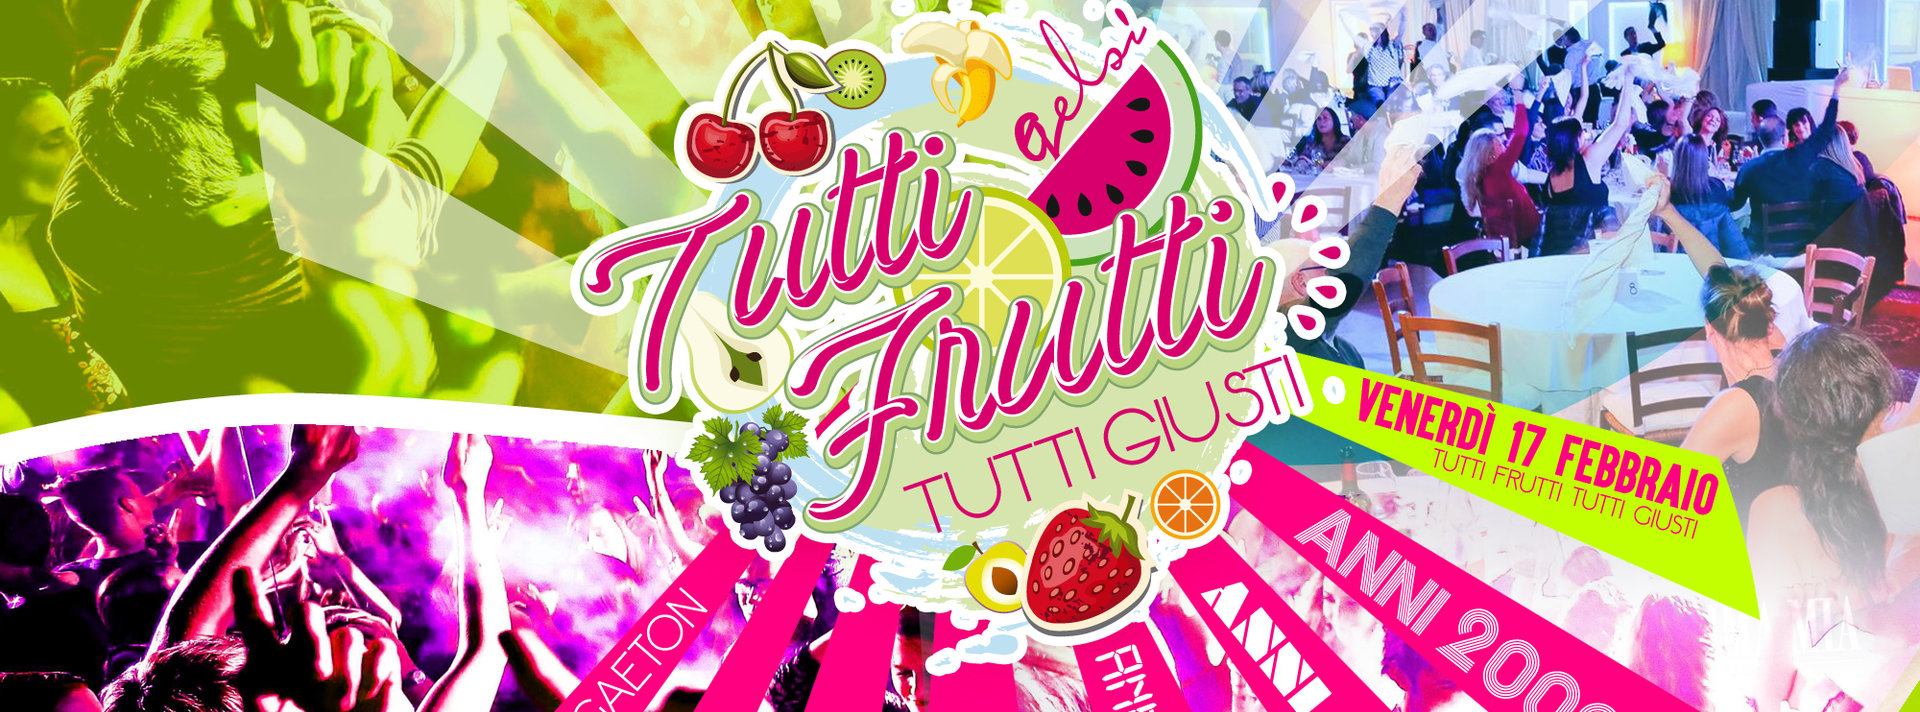 Tutti Frutti Tutti Giusti - 17 febbraio 2017